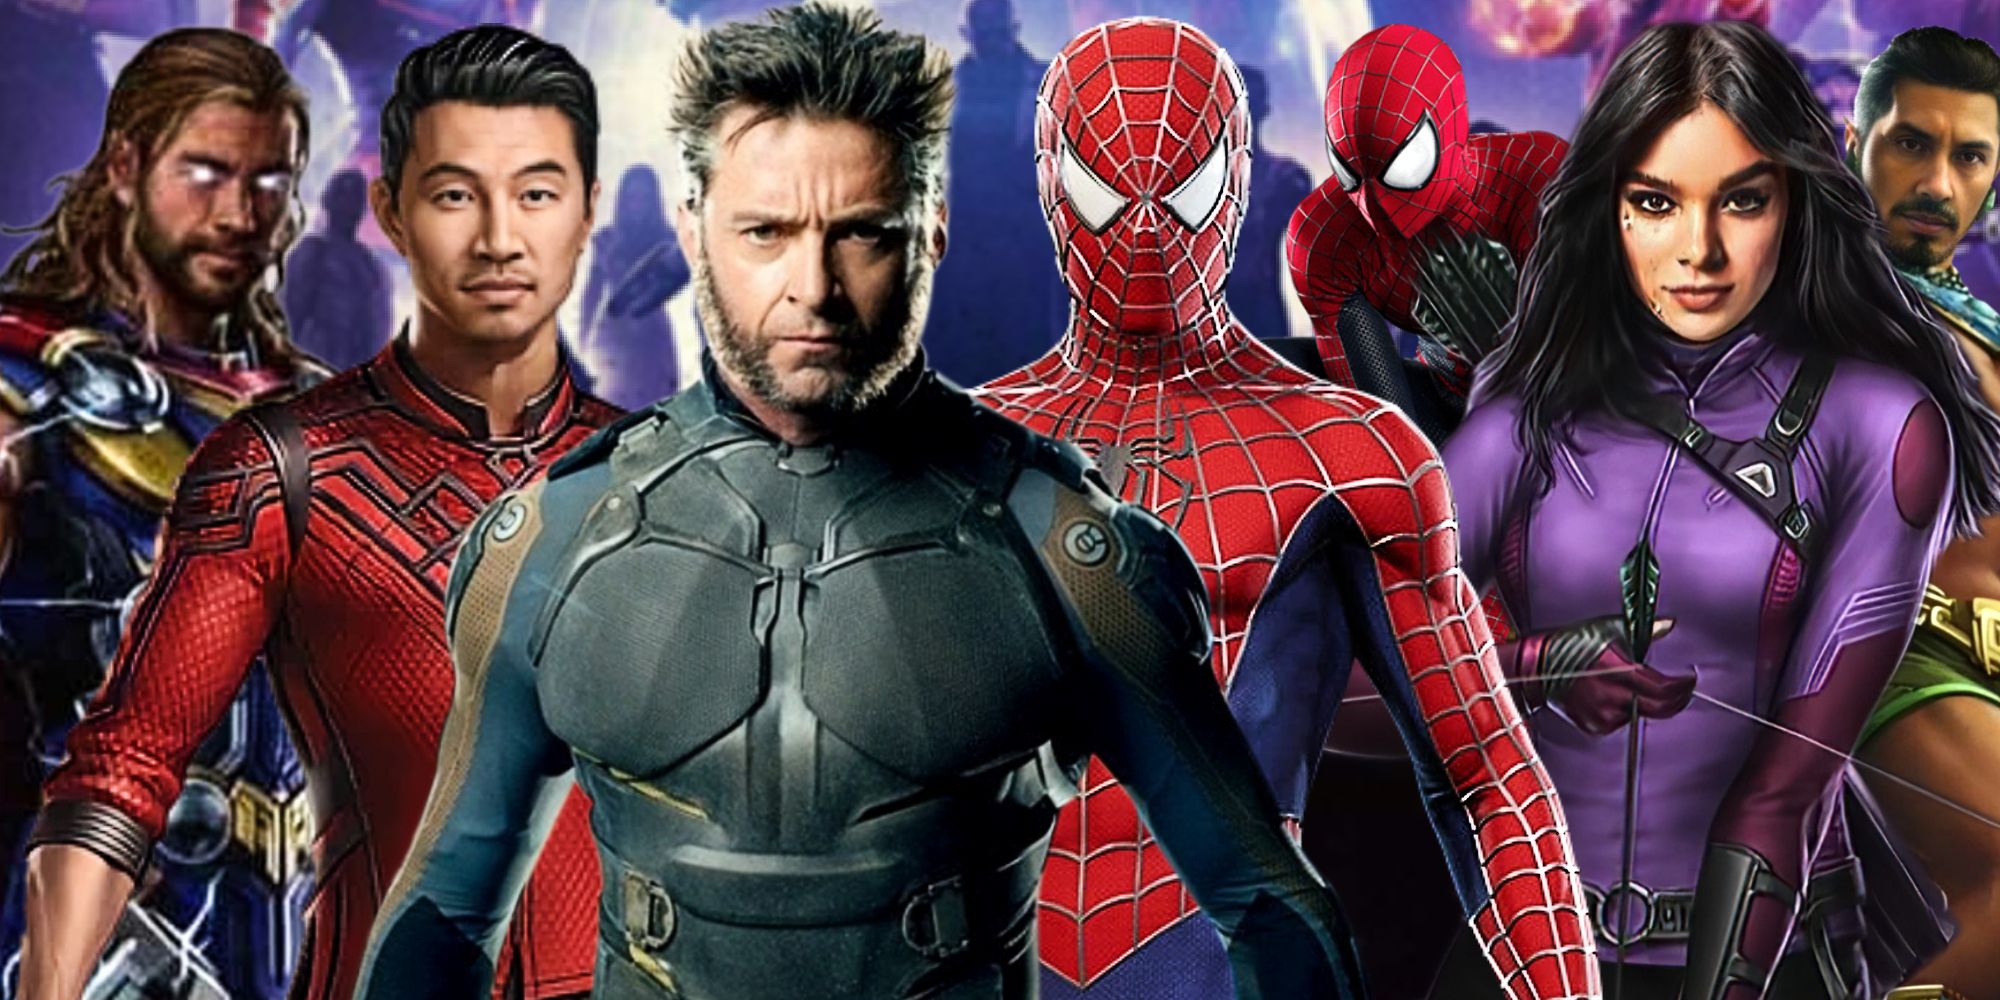 Thor (Chris Hemsworth), Shang-Chi (Simu Liu), Wolverine (Hugh Jackman), Spider-Man (Tobey Maguire), Spider-Man (Andrew Garfield), Kate Bishop (Hailee Steinfeld) und Namor (Tenoch Huerta). bereit für die letzte Schlacht von Secret Wars